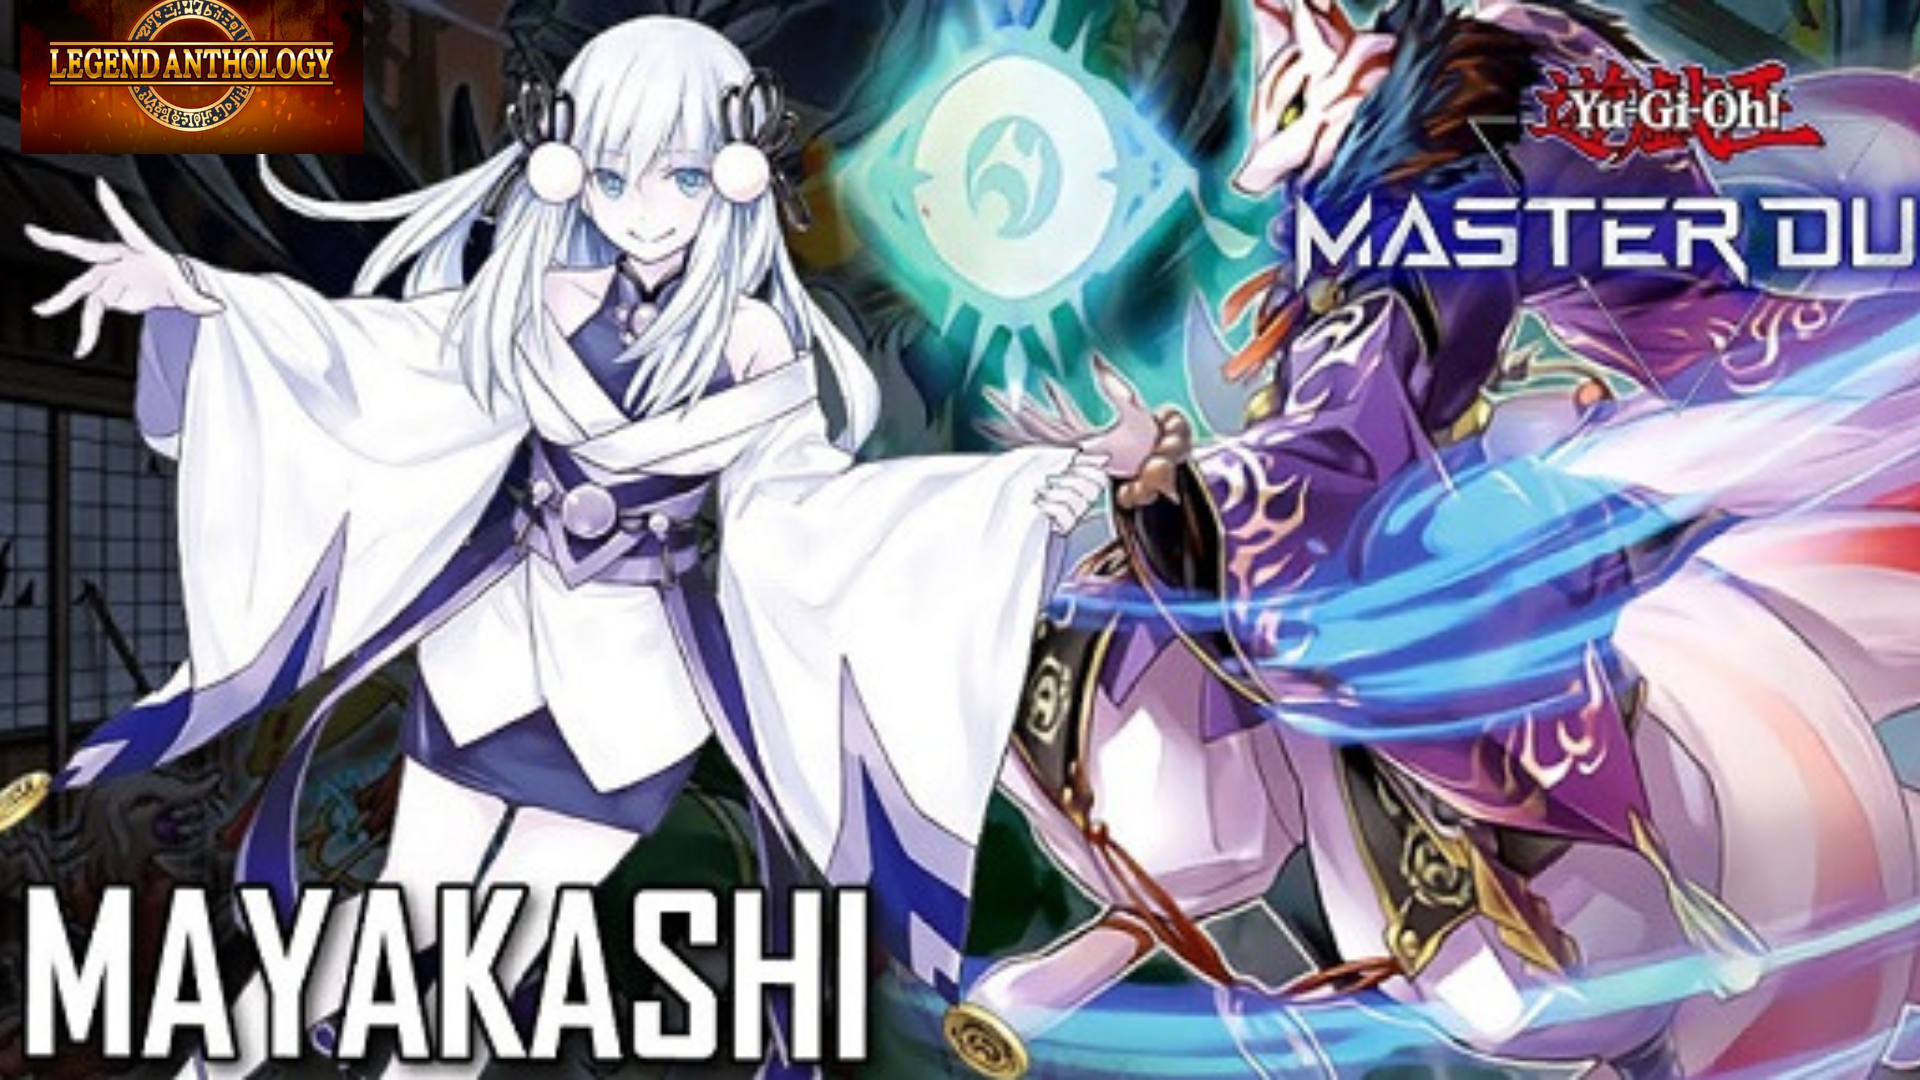 Hướng dẫn chơi Mayakashi - Ver Legend Anthology (Master Duel)